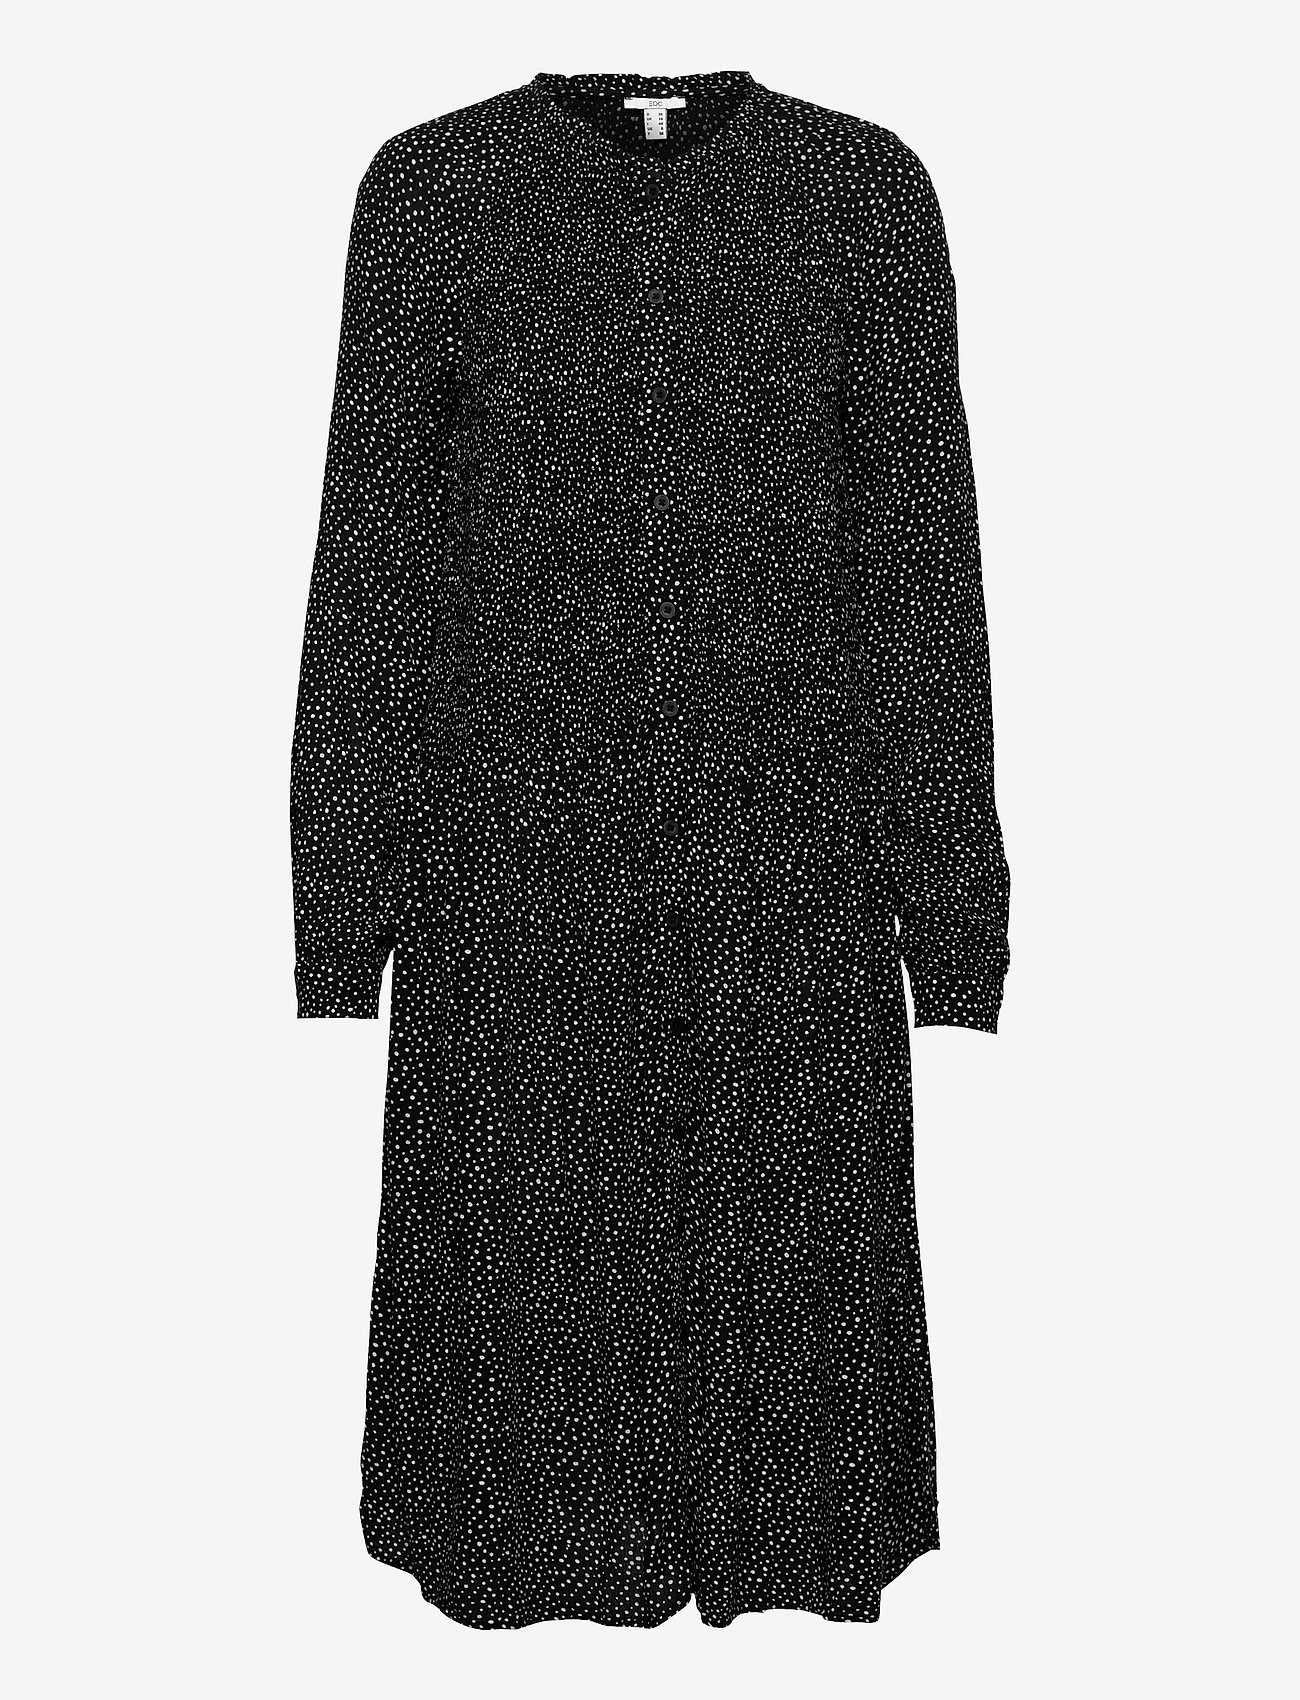 EDC by Esprit - Dresses light woven - midi kjoler - black 3 - 0